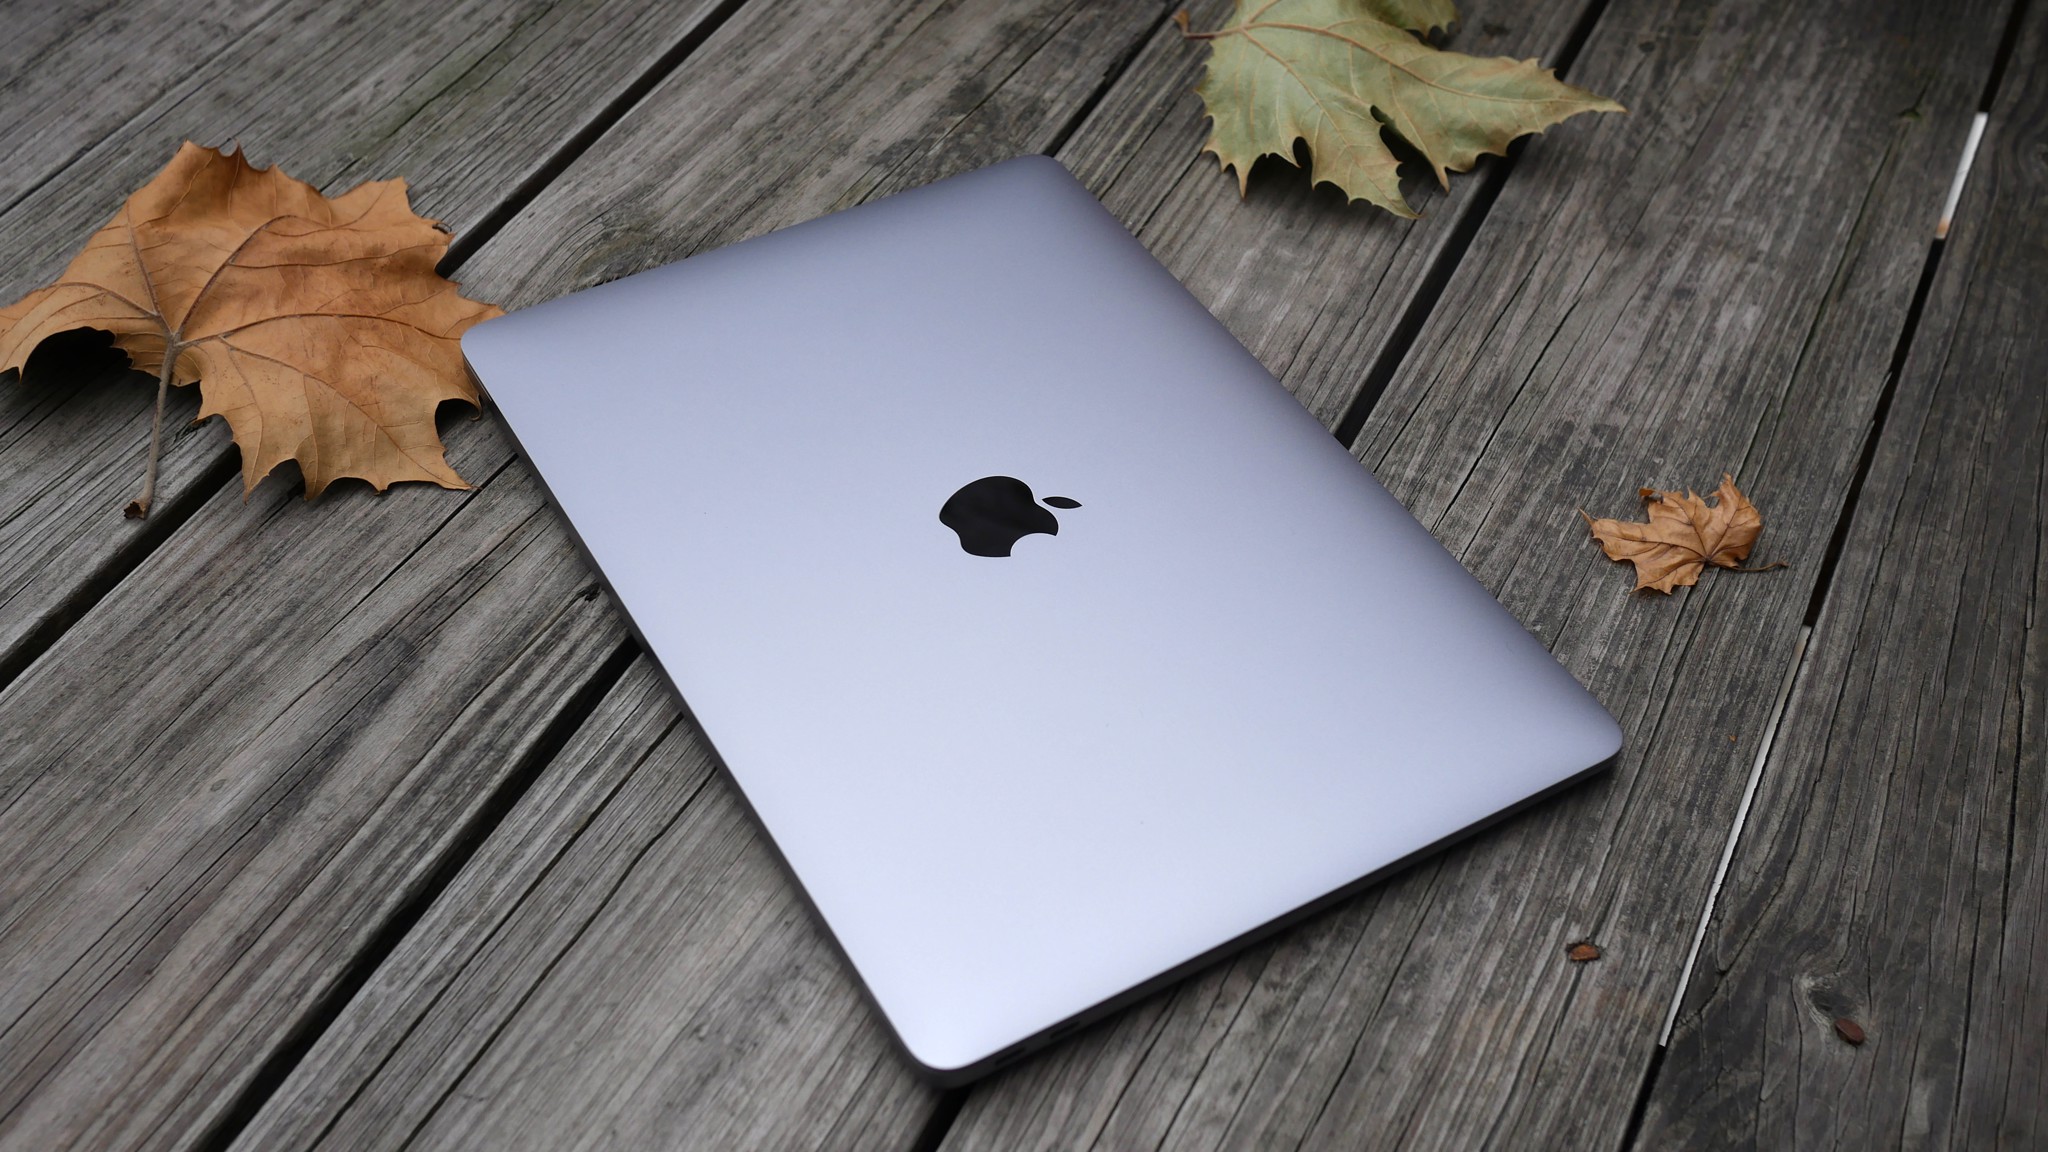 Thu Mua Máy Tính Macbook cũ mới giá cao nhất tại hà nội